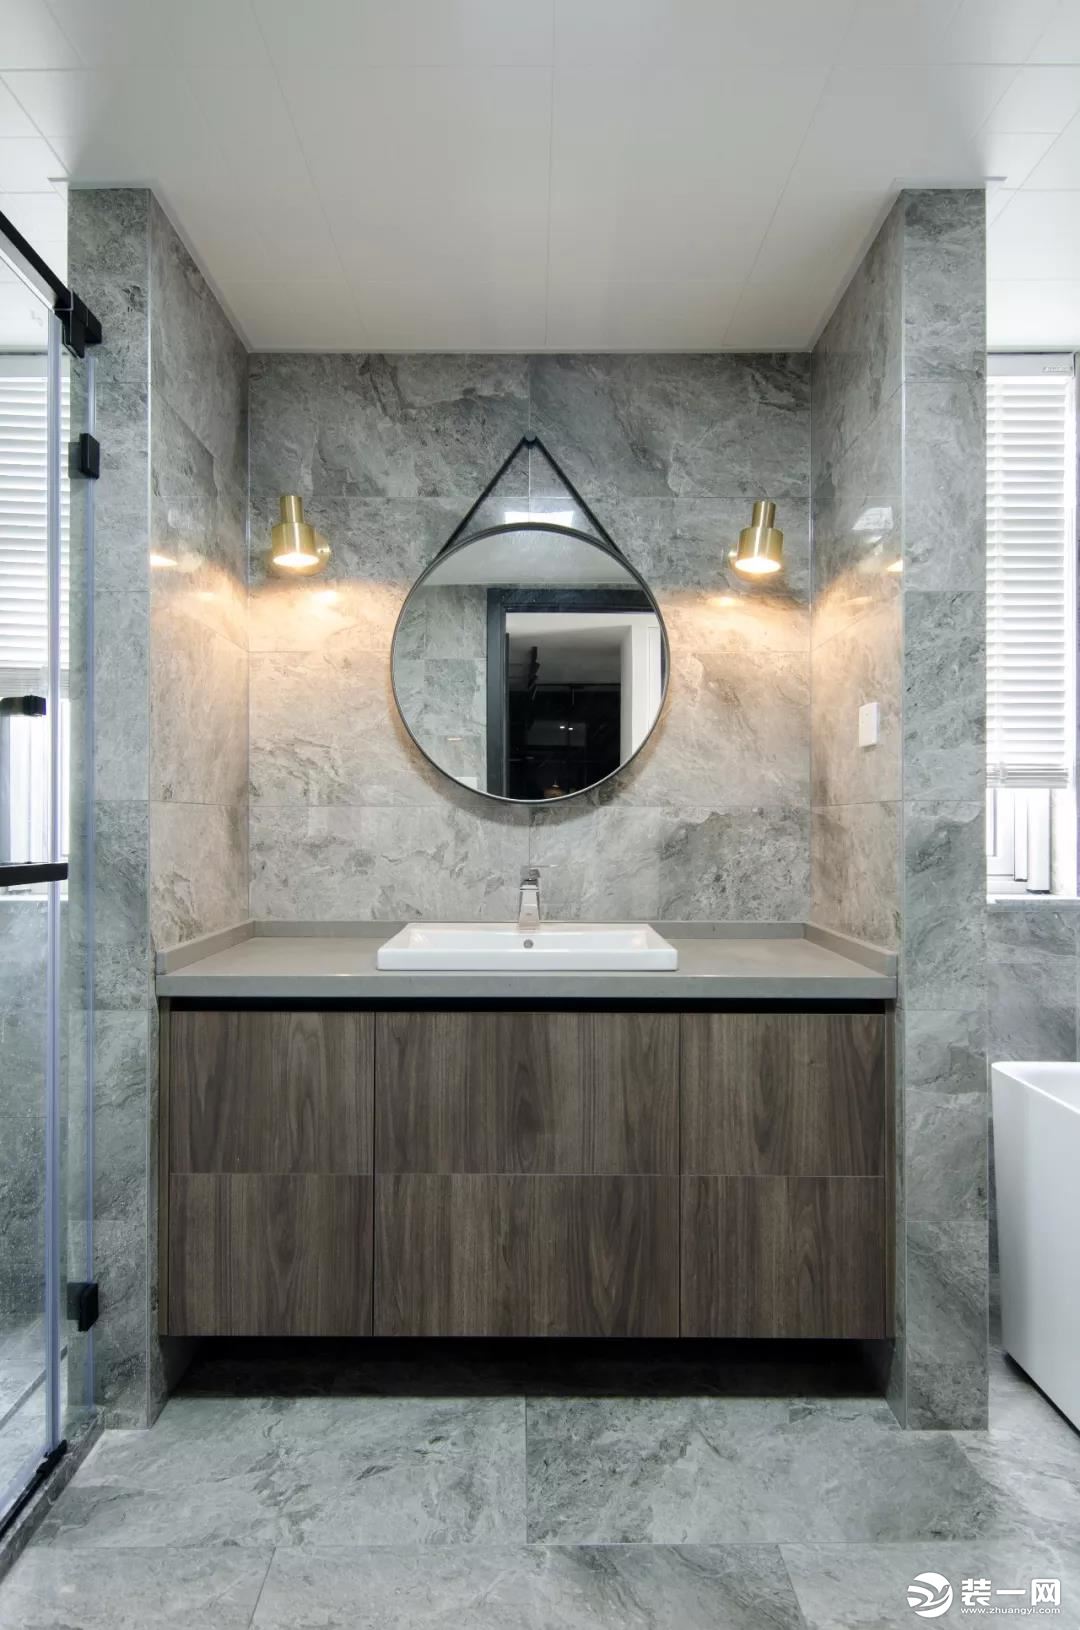 卫生间内部的空间非常宽敞，在洗手台的两侧分别作了淋浴房和浴缸的设计